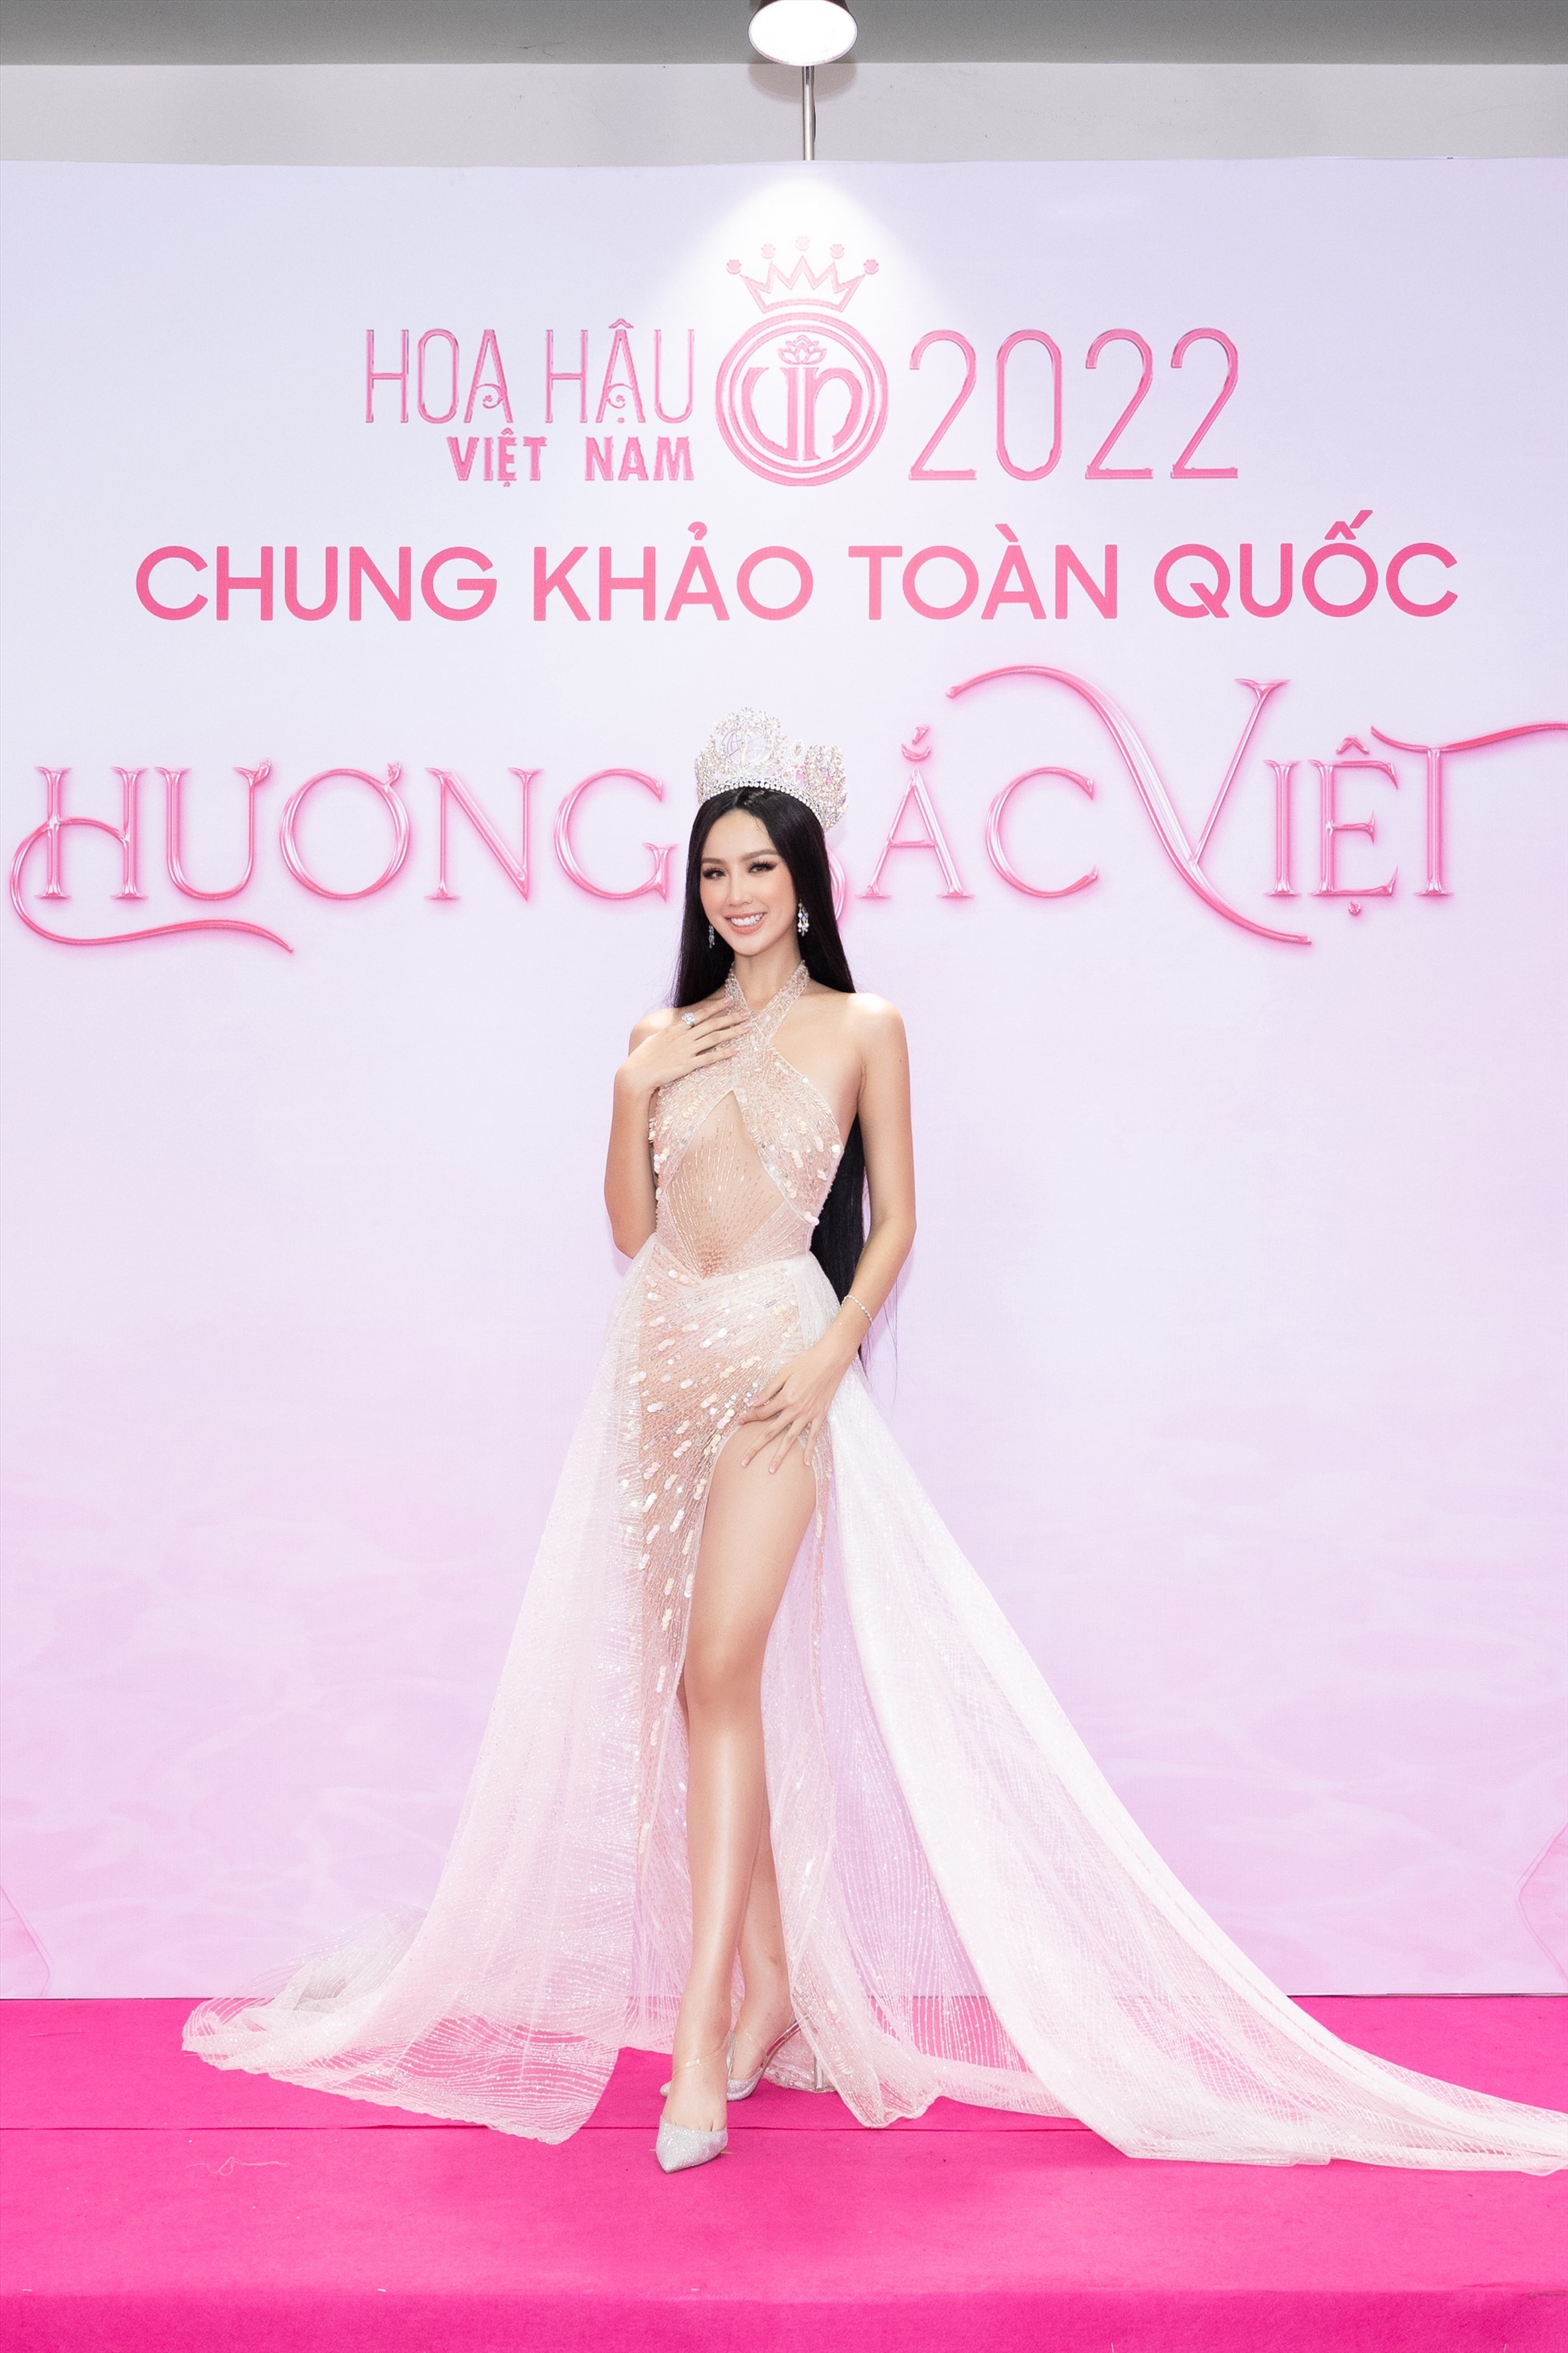 Miss Intercontinental 2022 Lê Nguyễn Bảo Ngọc sang chảnh với tone bạc với chi tiết xẻ cao khoe trọn đôi chân.